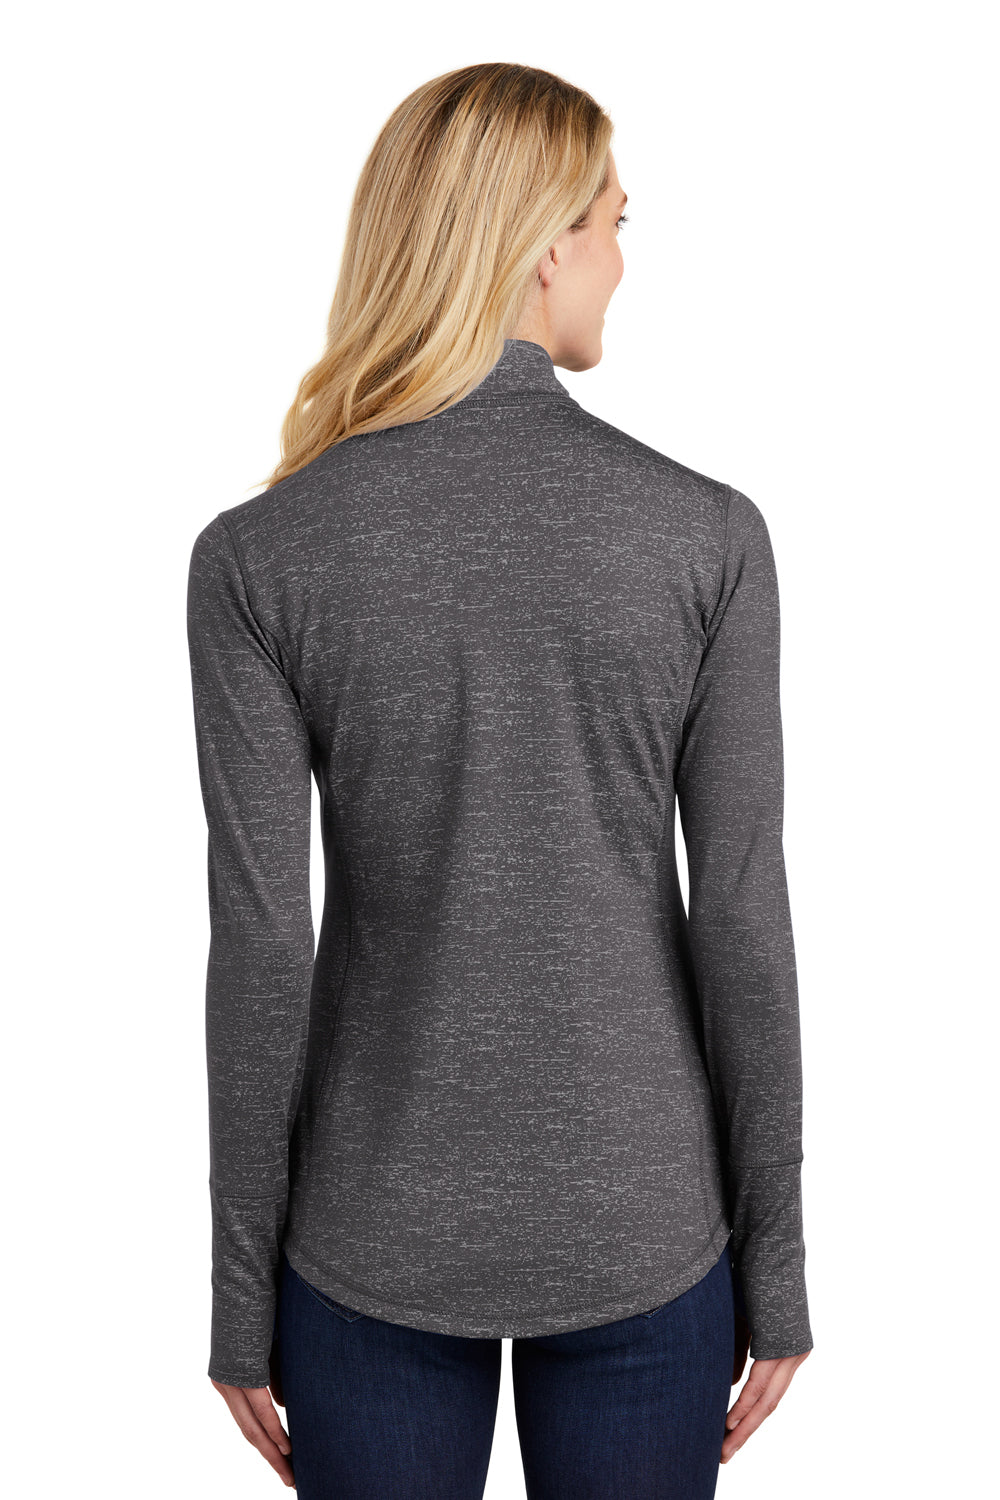 Sport-Tek LST855 Womens Sport-Wick Moisture Wicking 1/4 Zip Sweatshirt Charcoal Grey Back